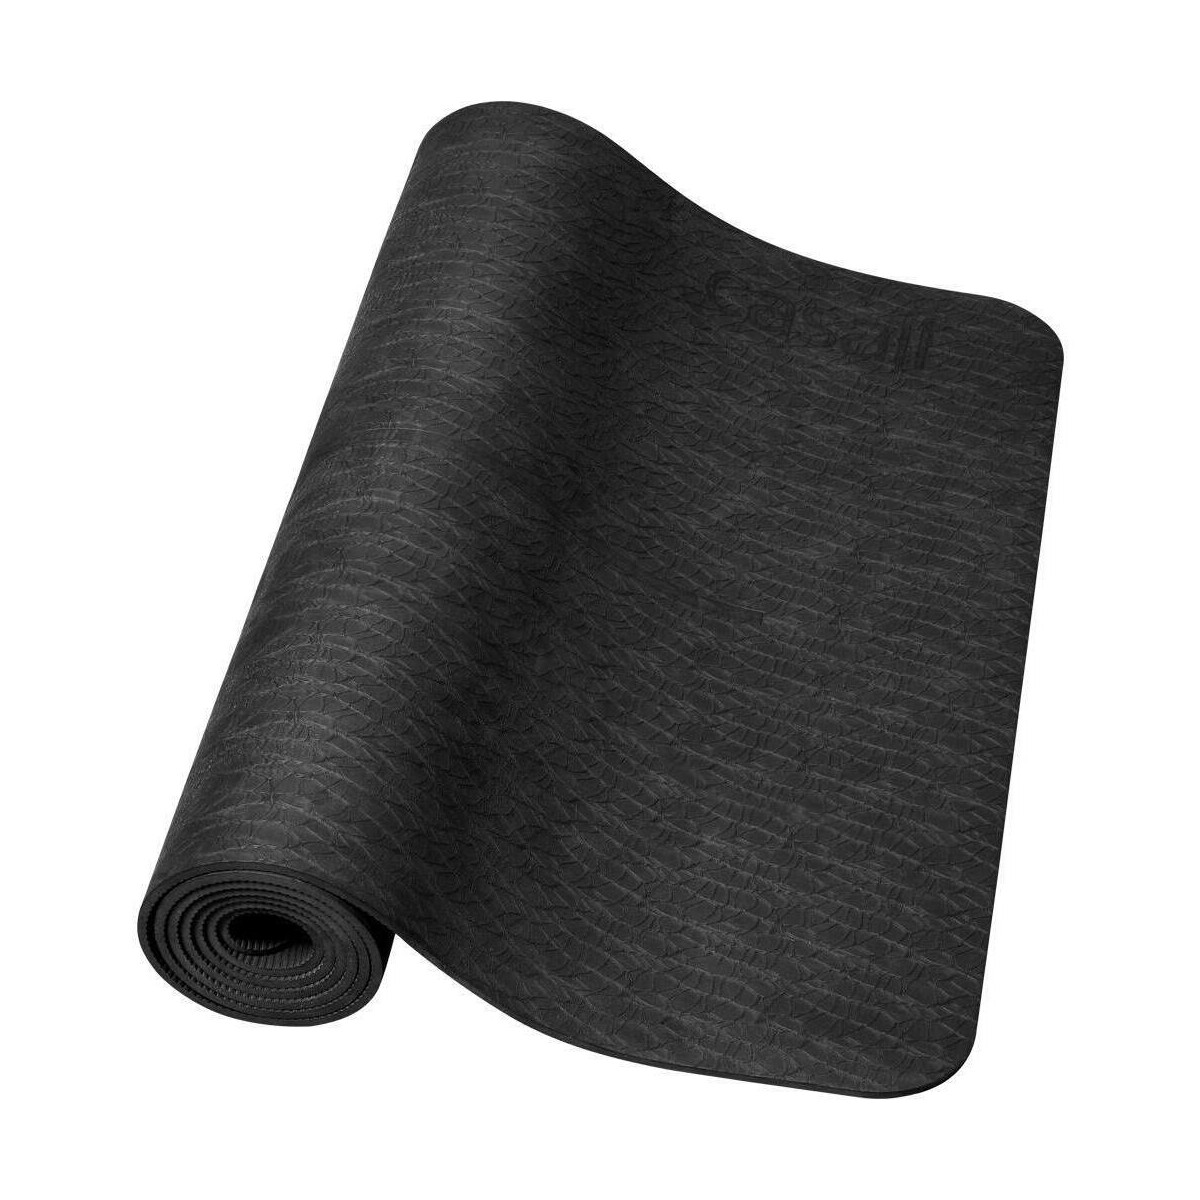 Accessoires Accessoires sport Casall Exercise mat Cushion 5mm PVC free Noir